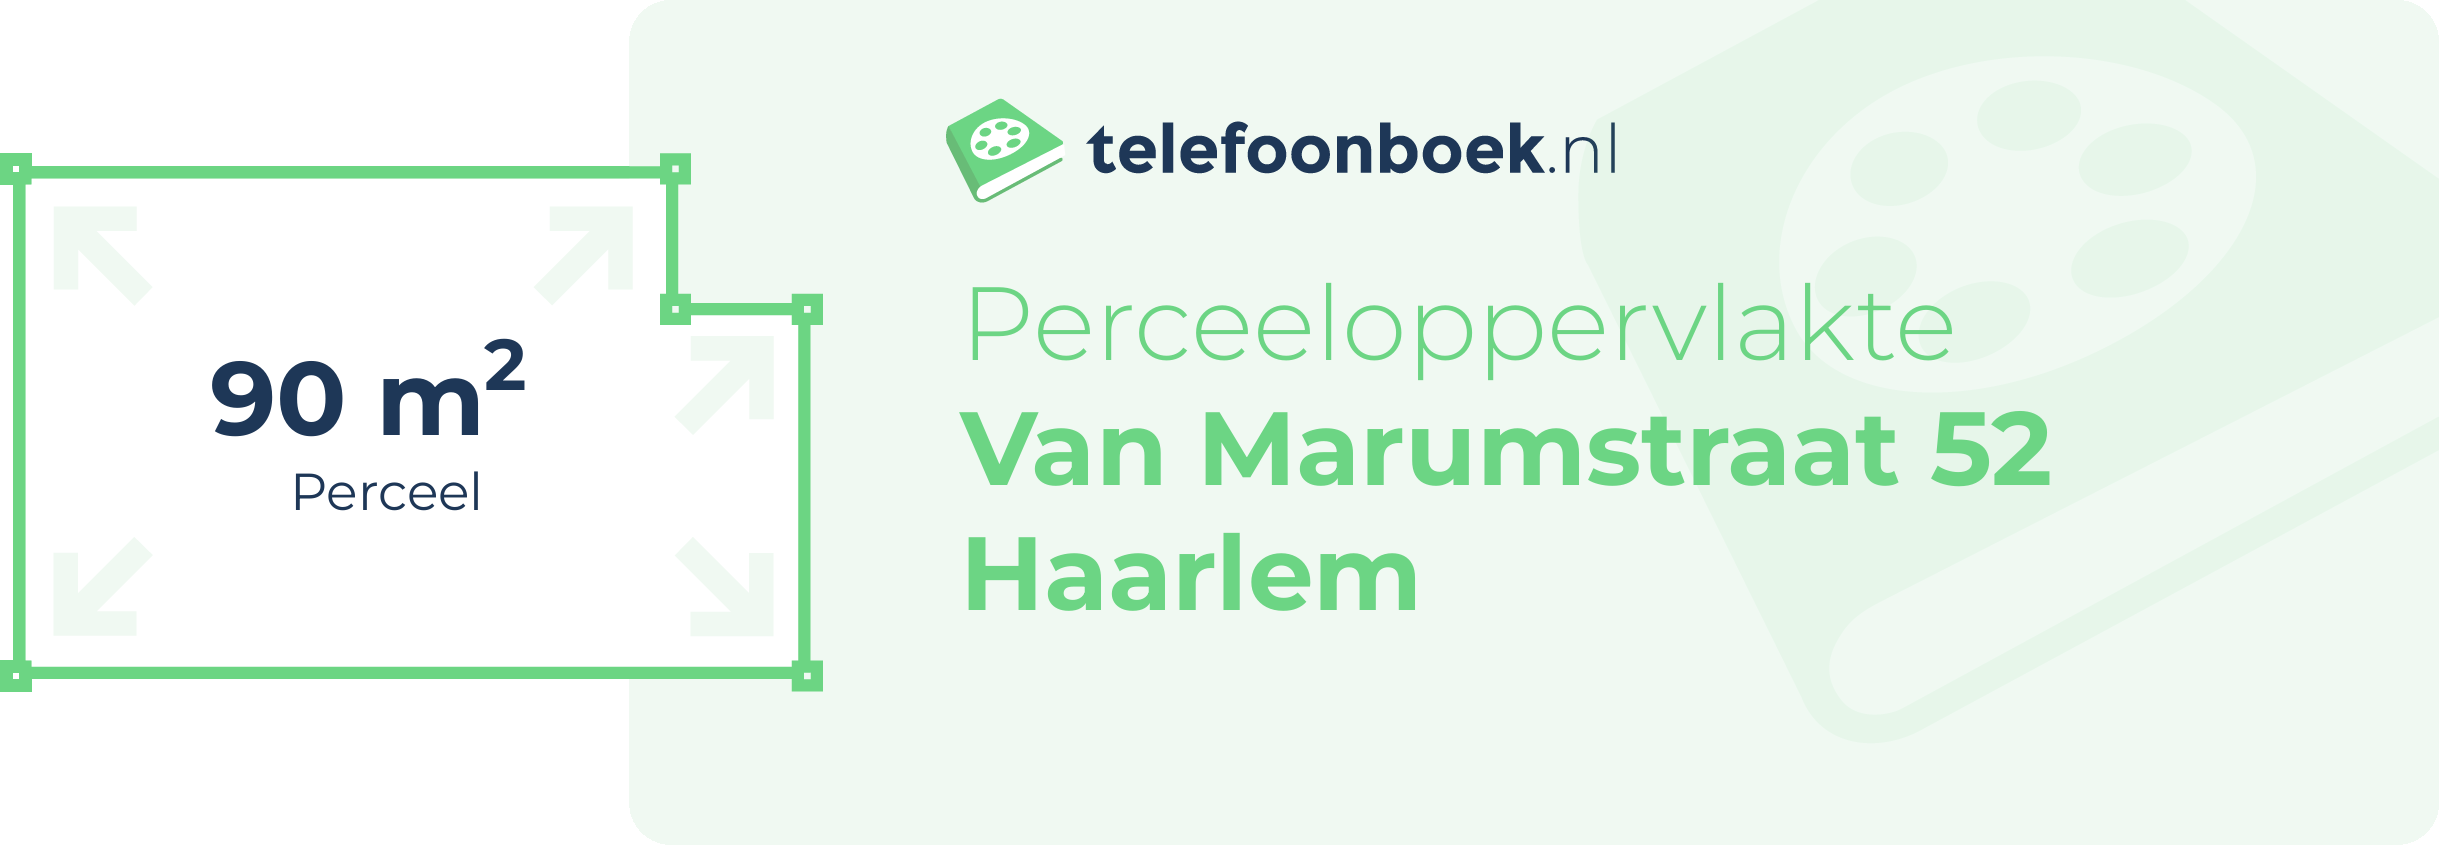 Perceeloppervlakte Van Marumstraat 52 Haarlem